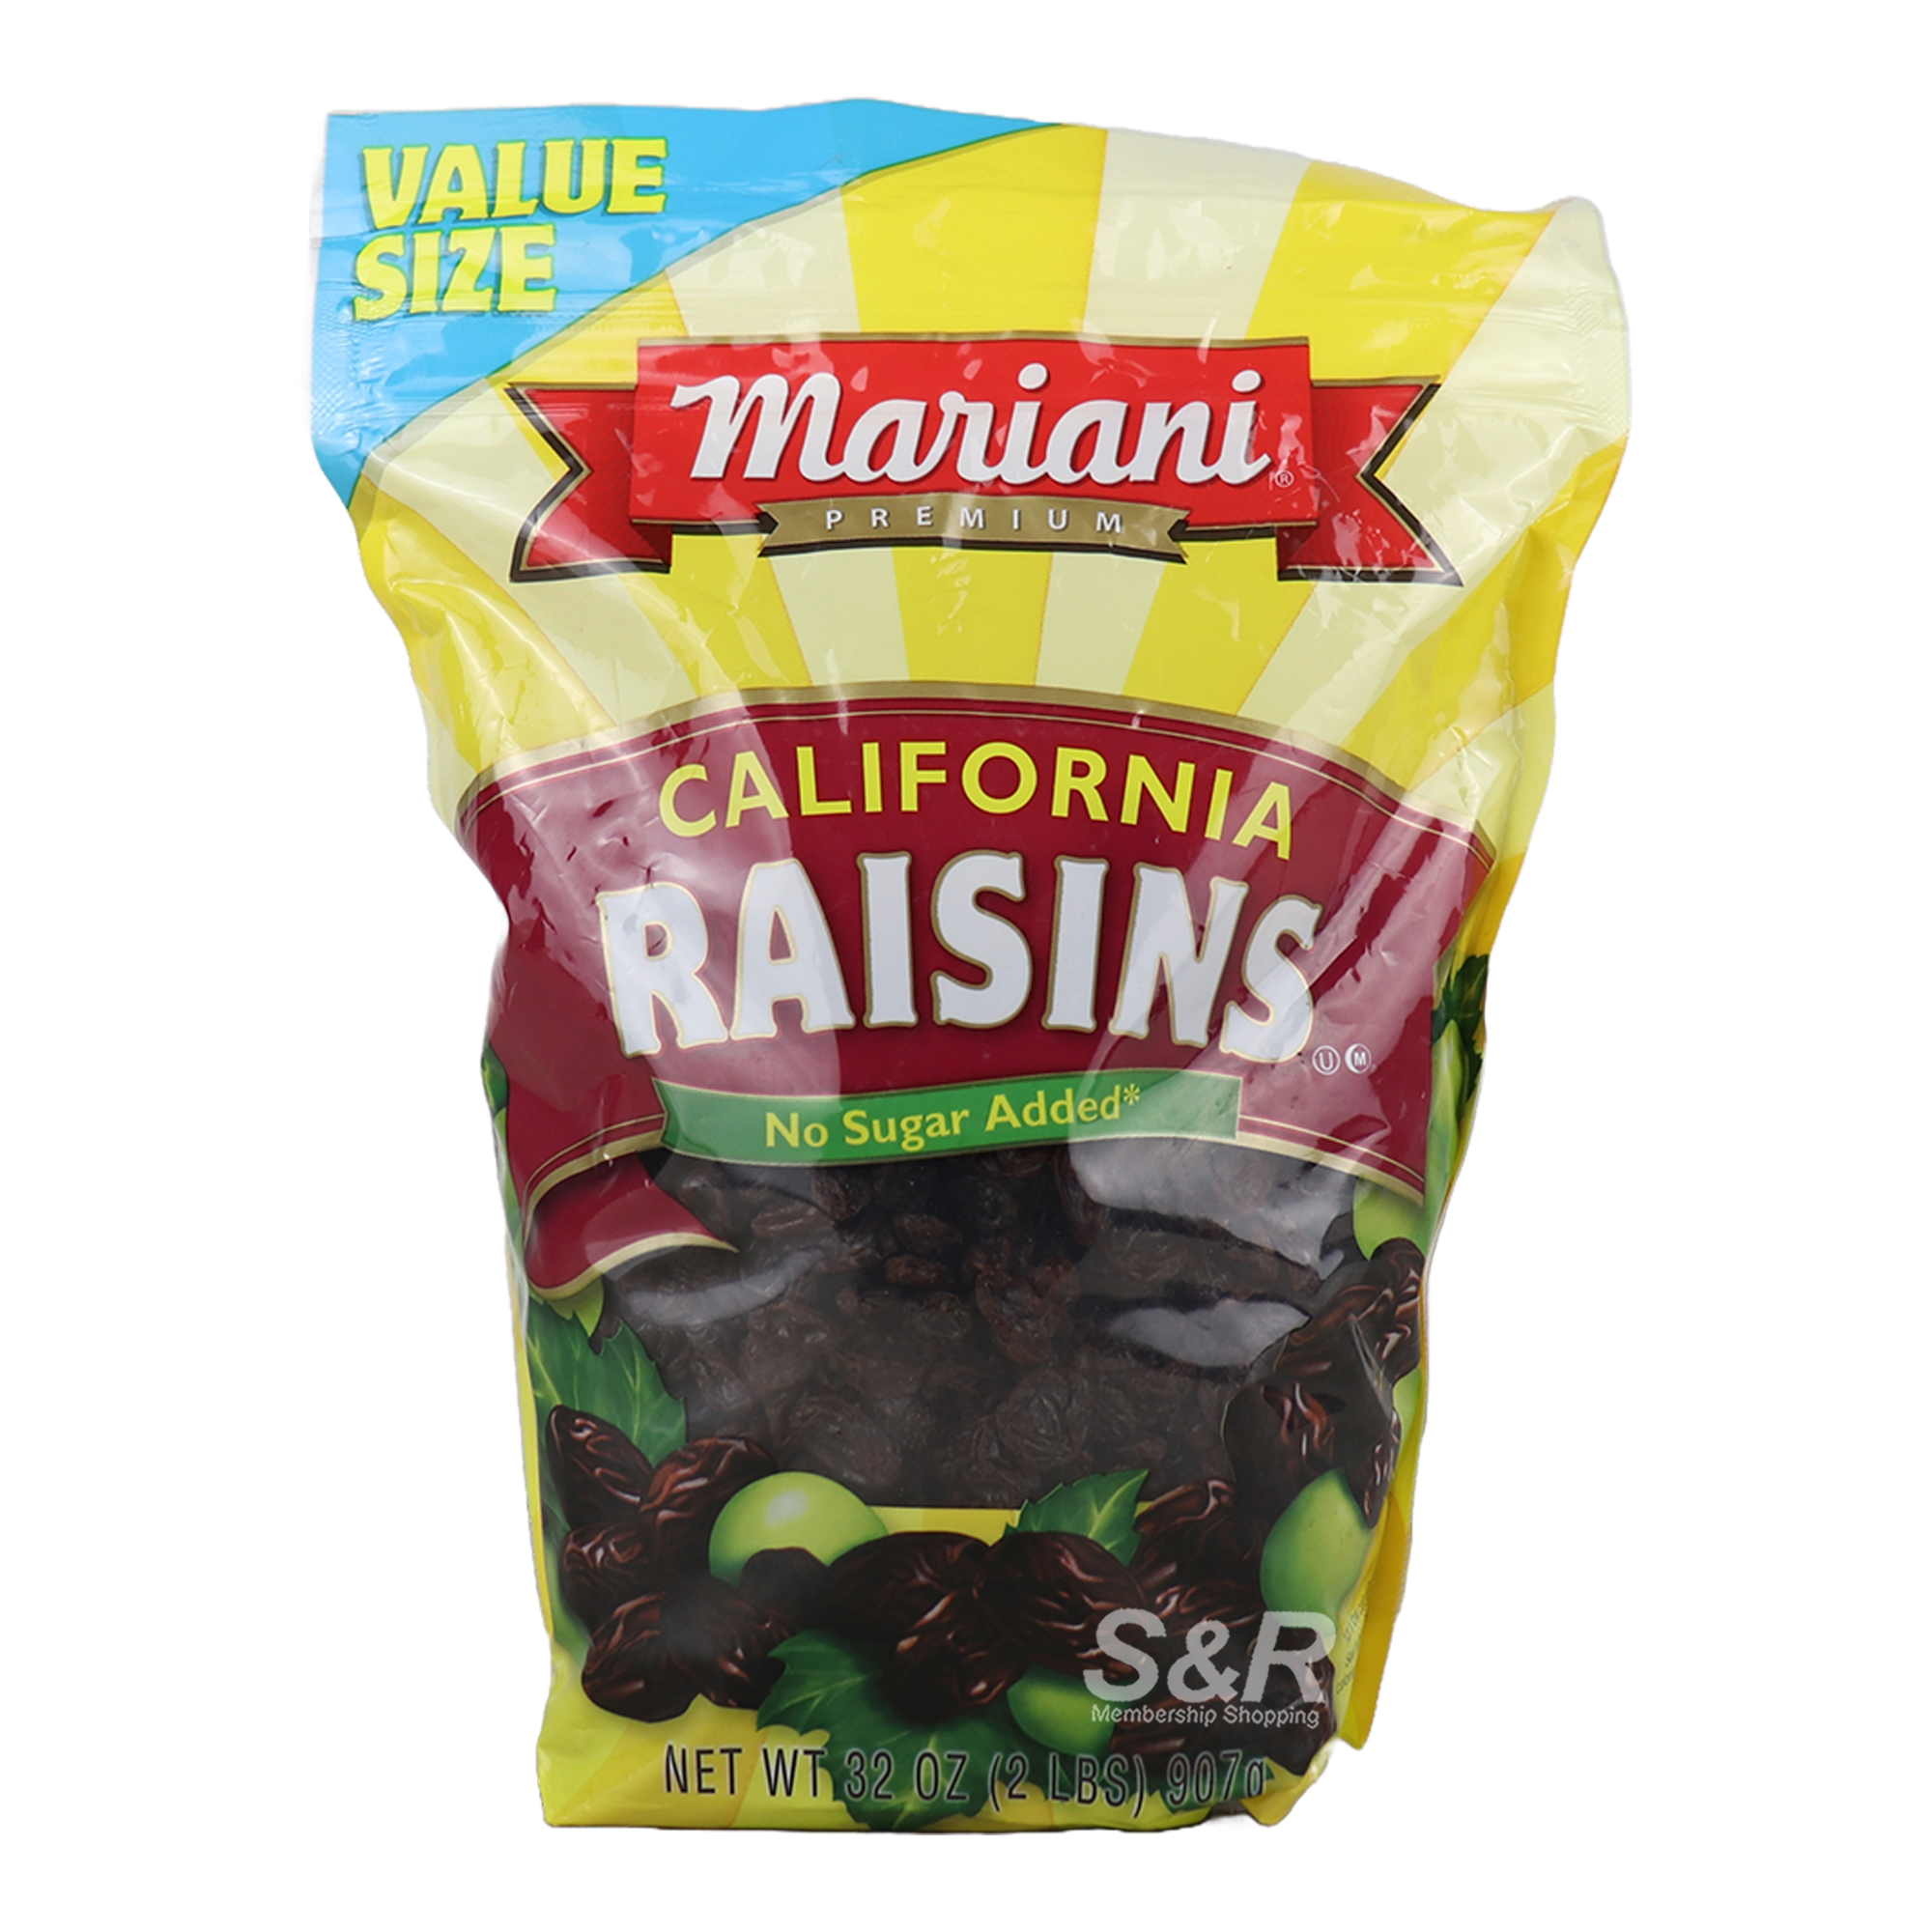 Mariani Premium California Raisins 907g